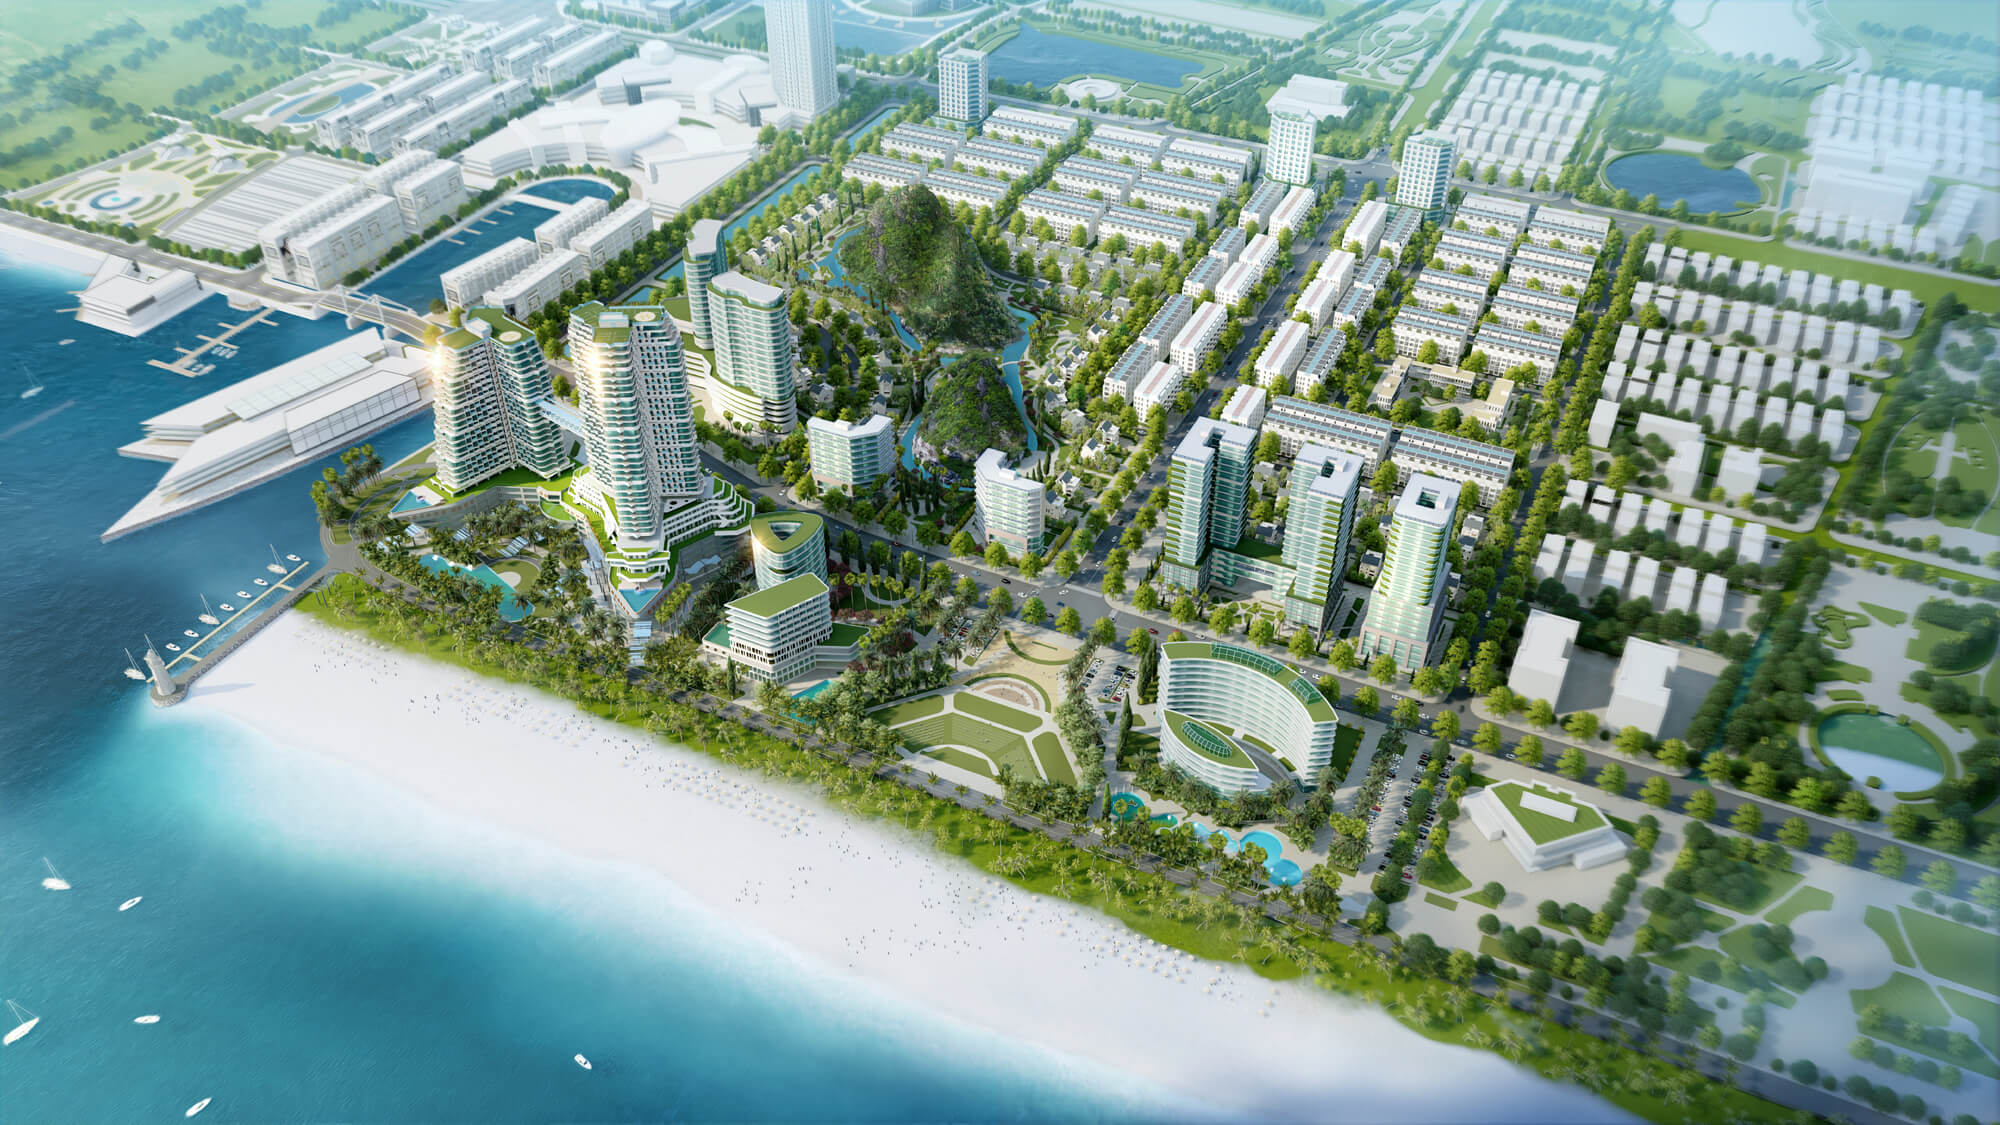 dự án khu đô thị ocean park vân đồn